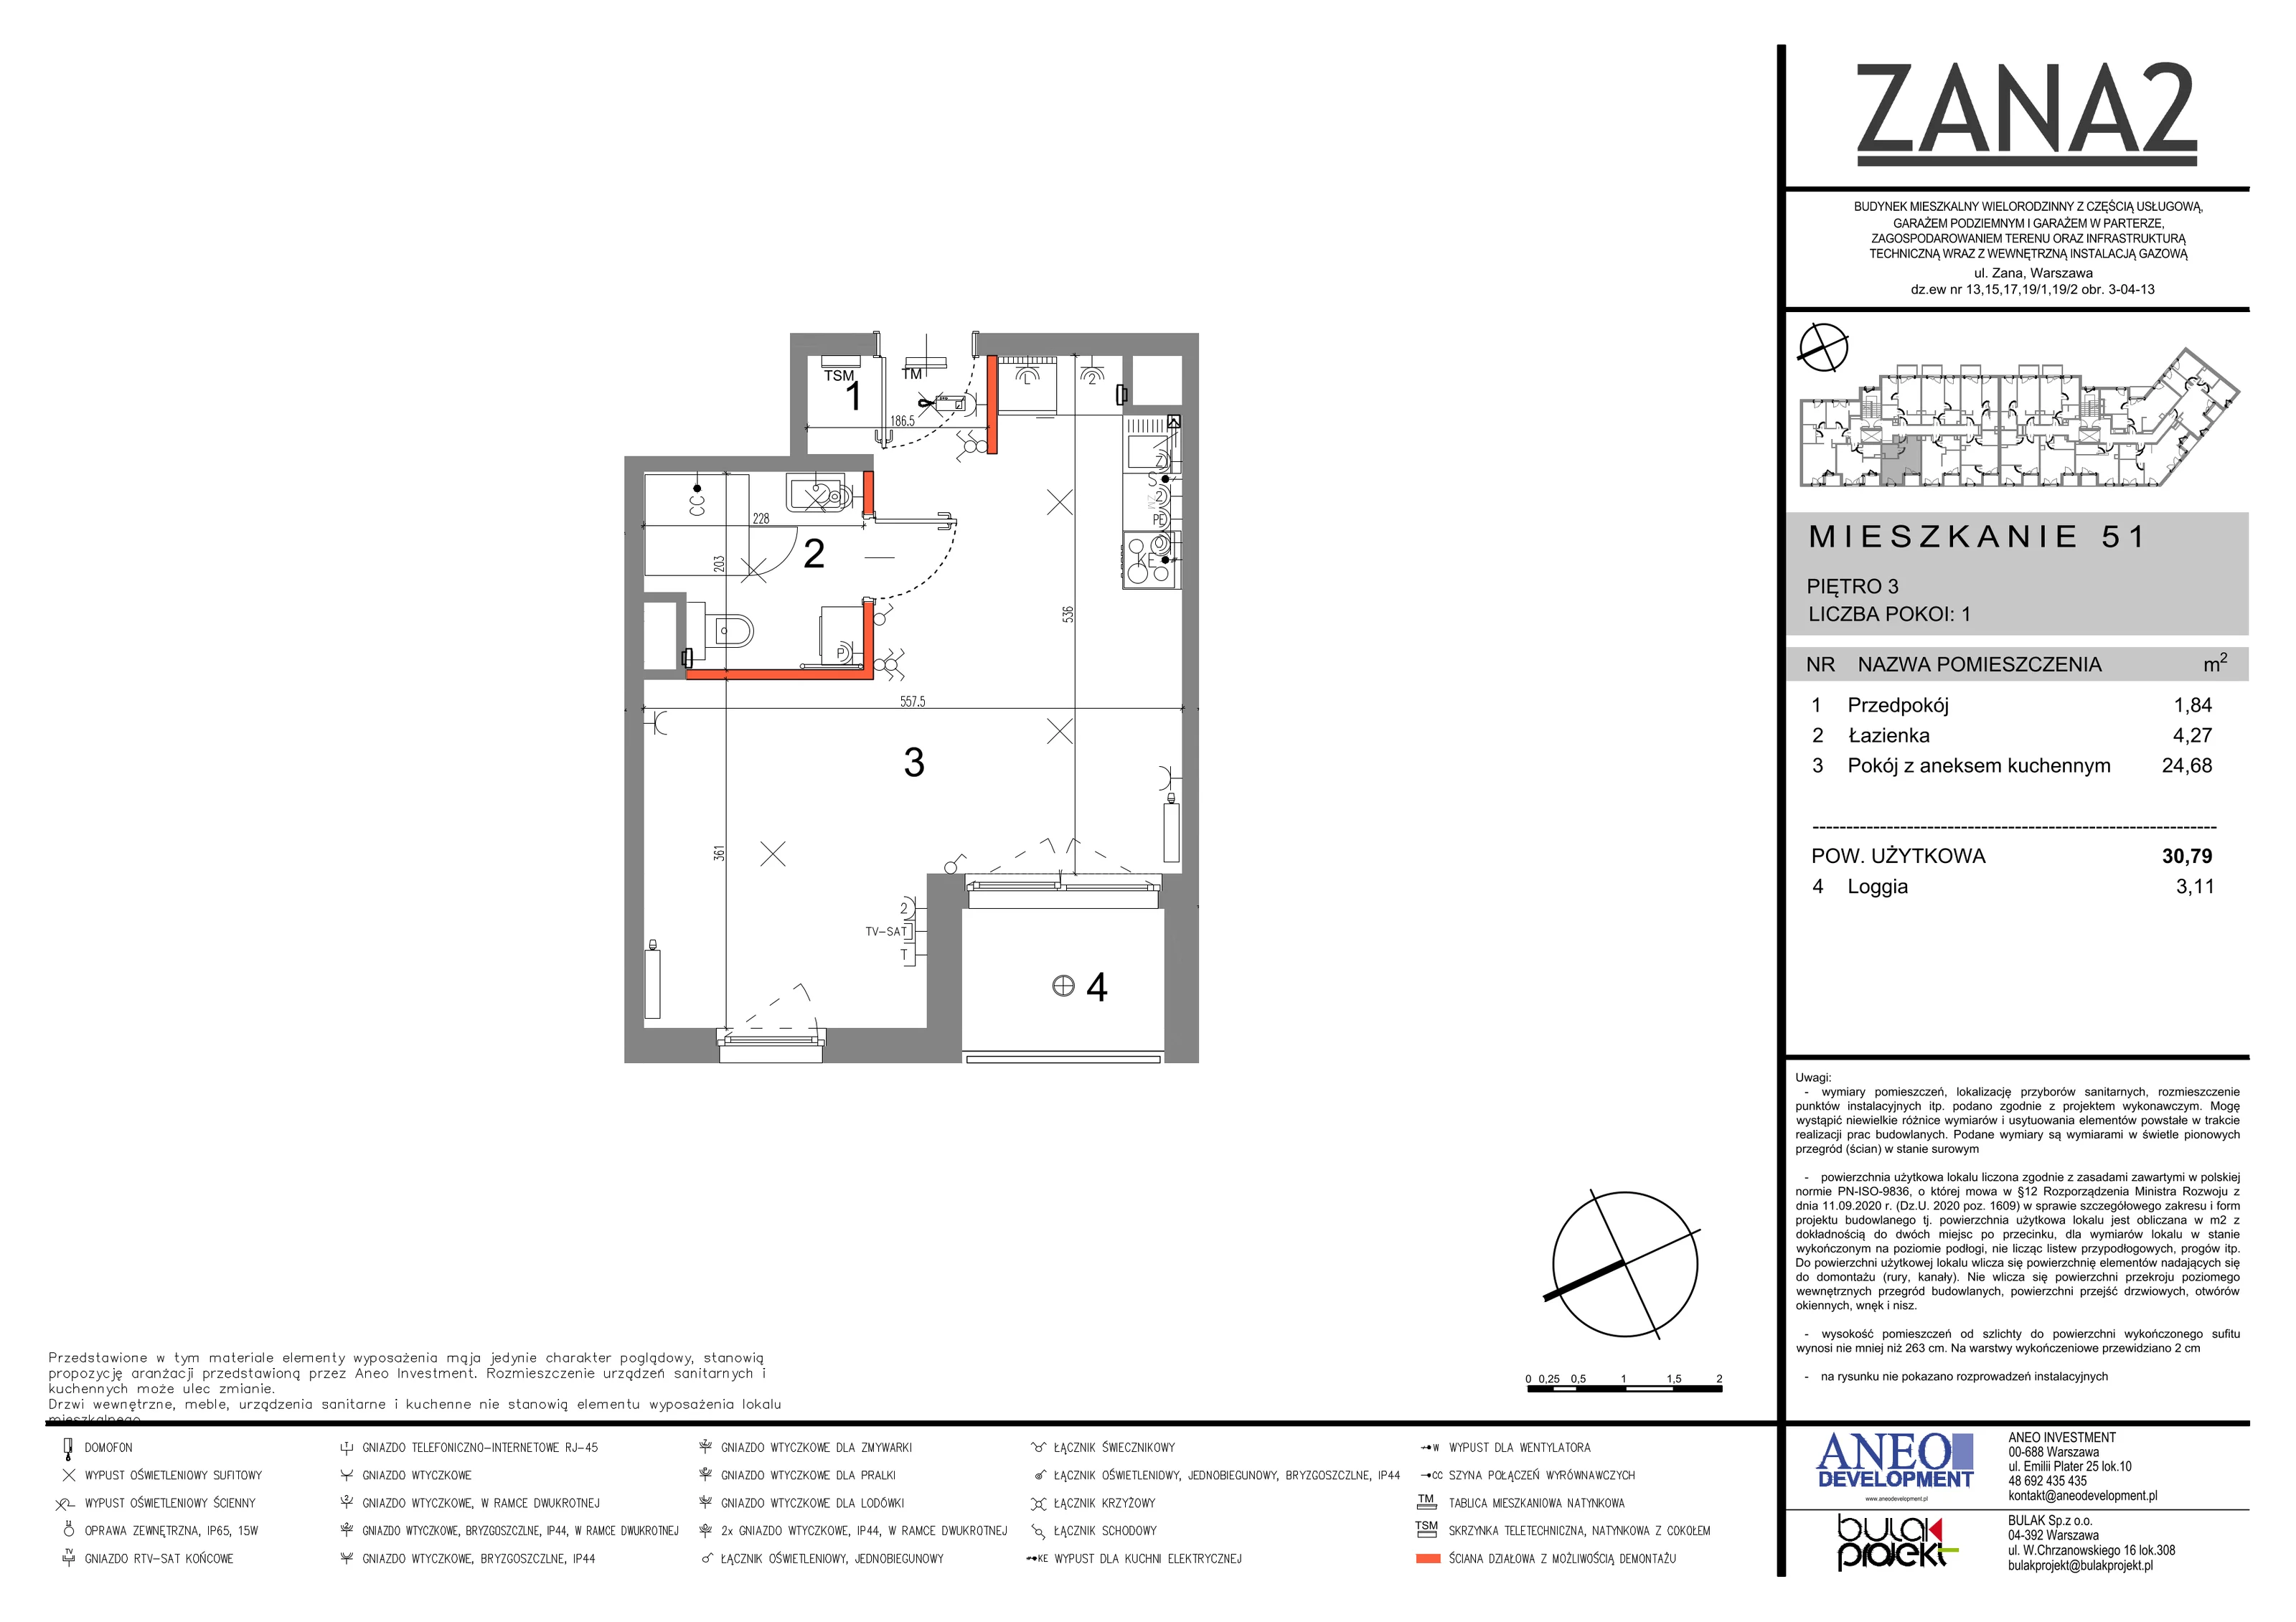 Mieszkanie 35,36 m², piętro 3, oferta nr 51, Zana 2, Warszawa, Praga Południe, Gocławek, ul. Tomasza Zana